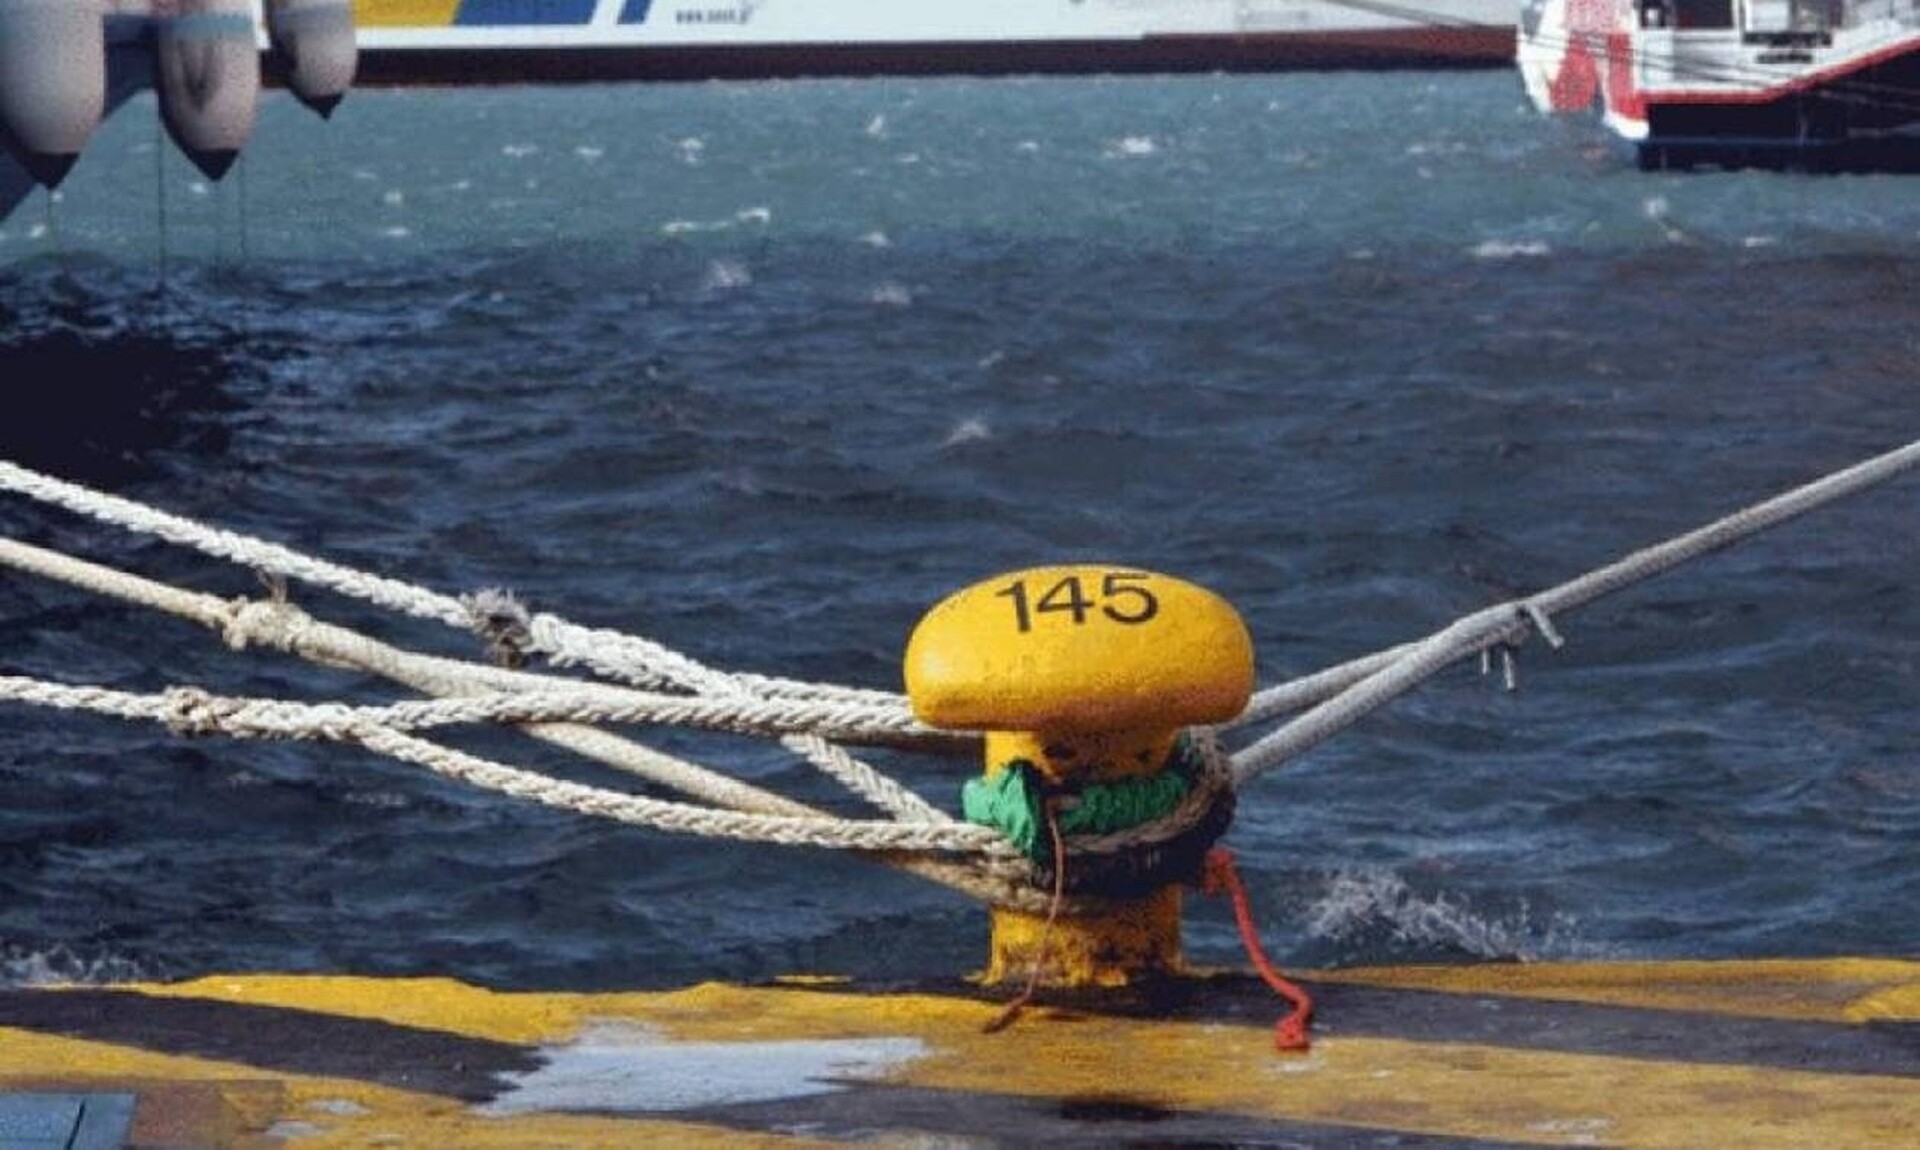 Χανιά: Νεκρός άντρας εντοπίστηκε μέσα στο πλοίο της γραμμής Πειραιάς - Χανιά